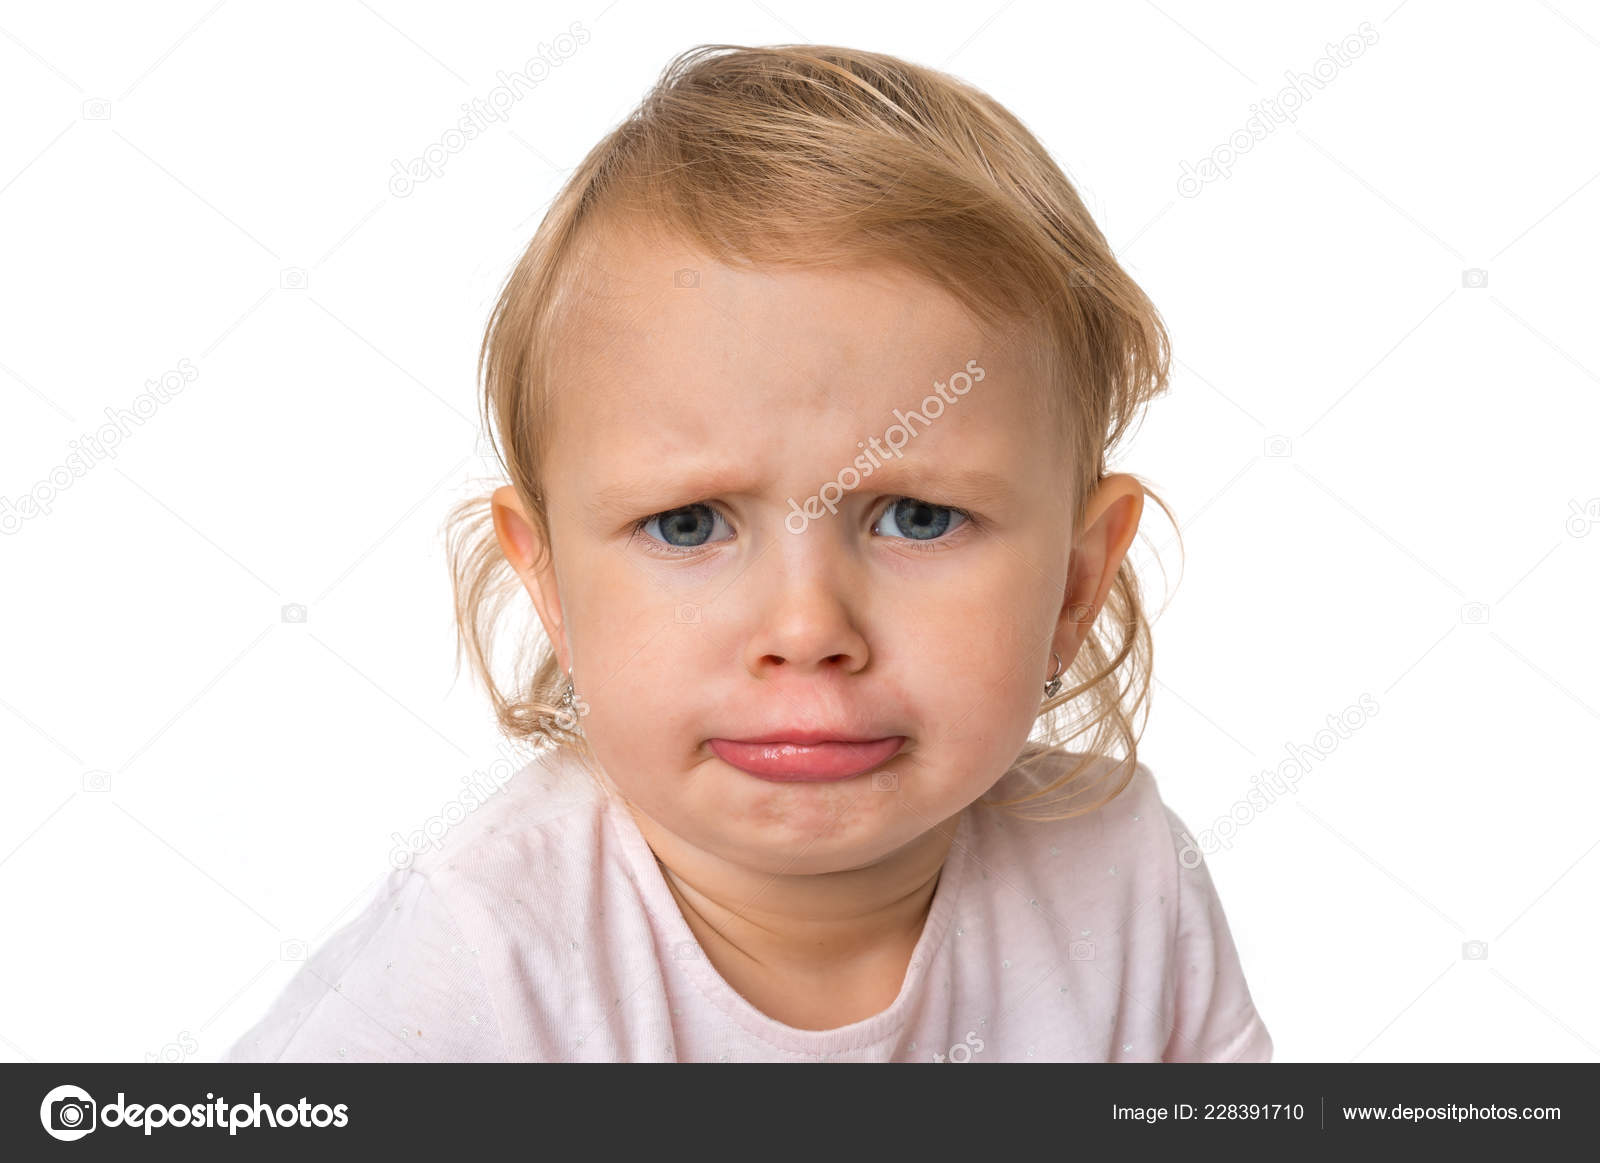 悲しい表情をした小さな赤ちゃん 不幸と悲しみの概念 ストック写真 C Andriano Cz